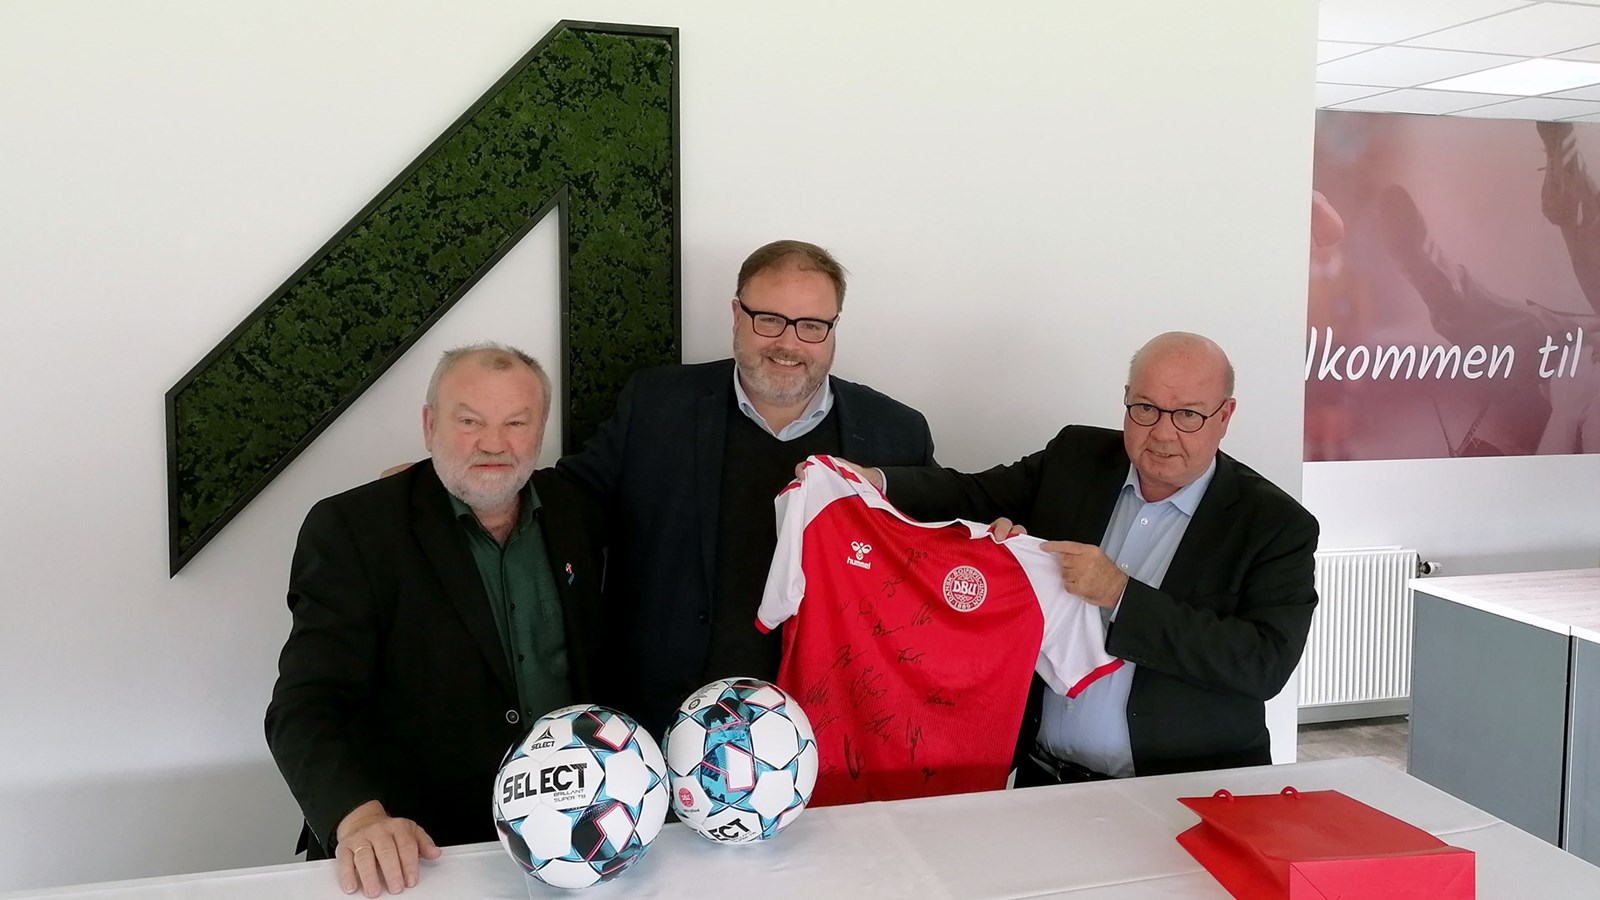 Velfærdsalliance i Vejle Kommune: Alle skal have mulighed for at spille fodbold